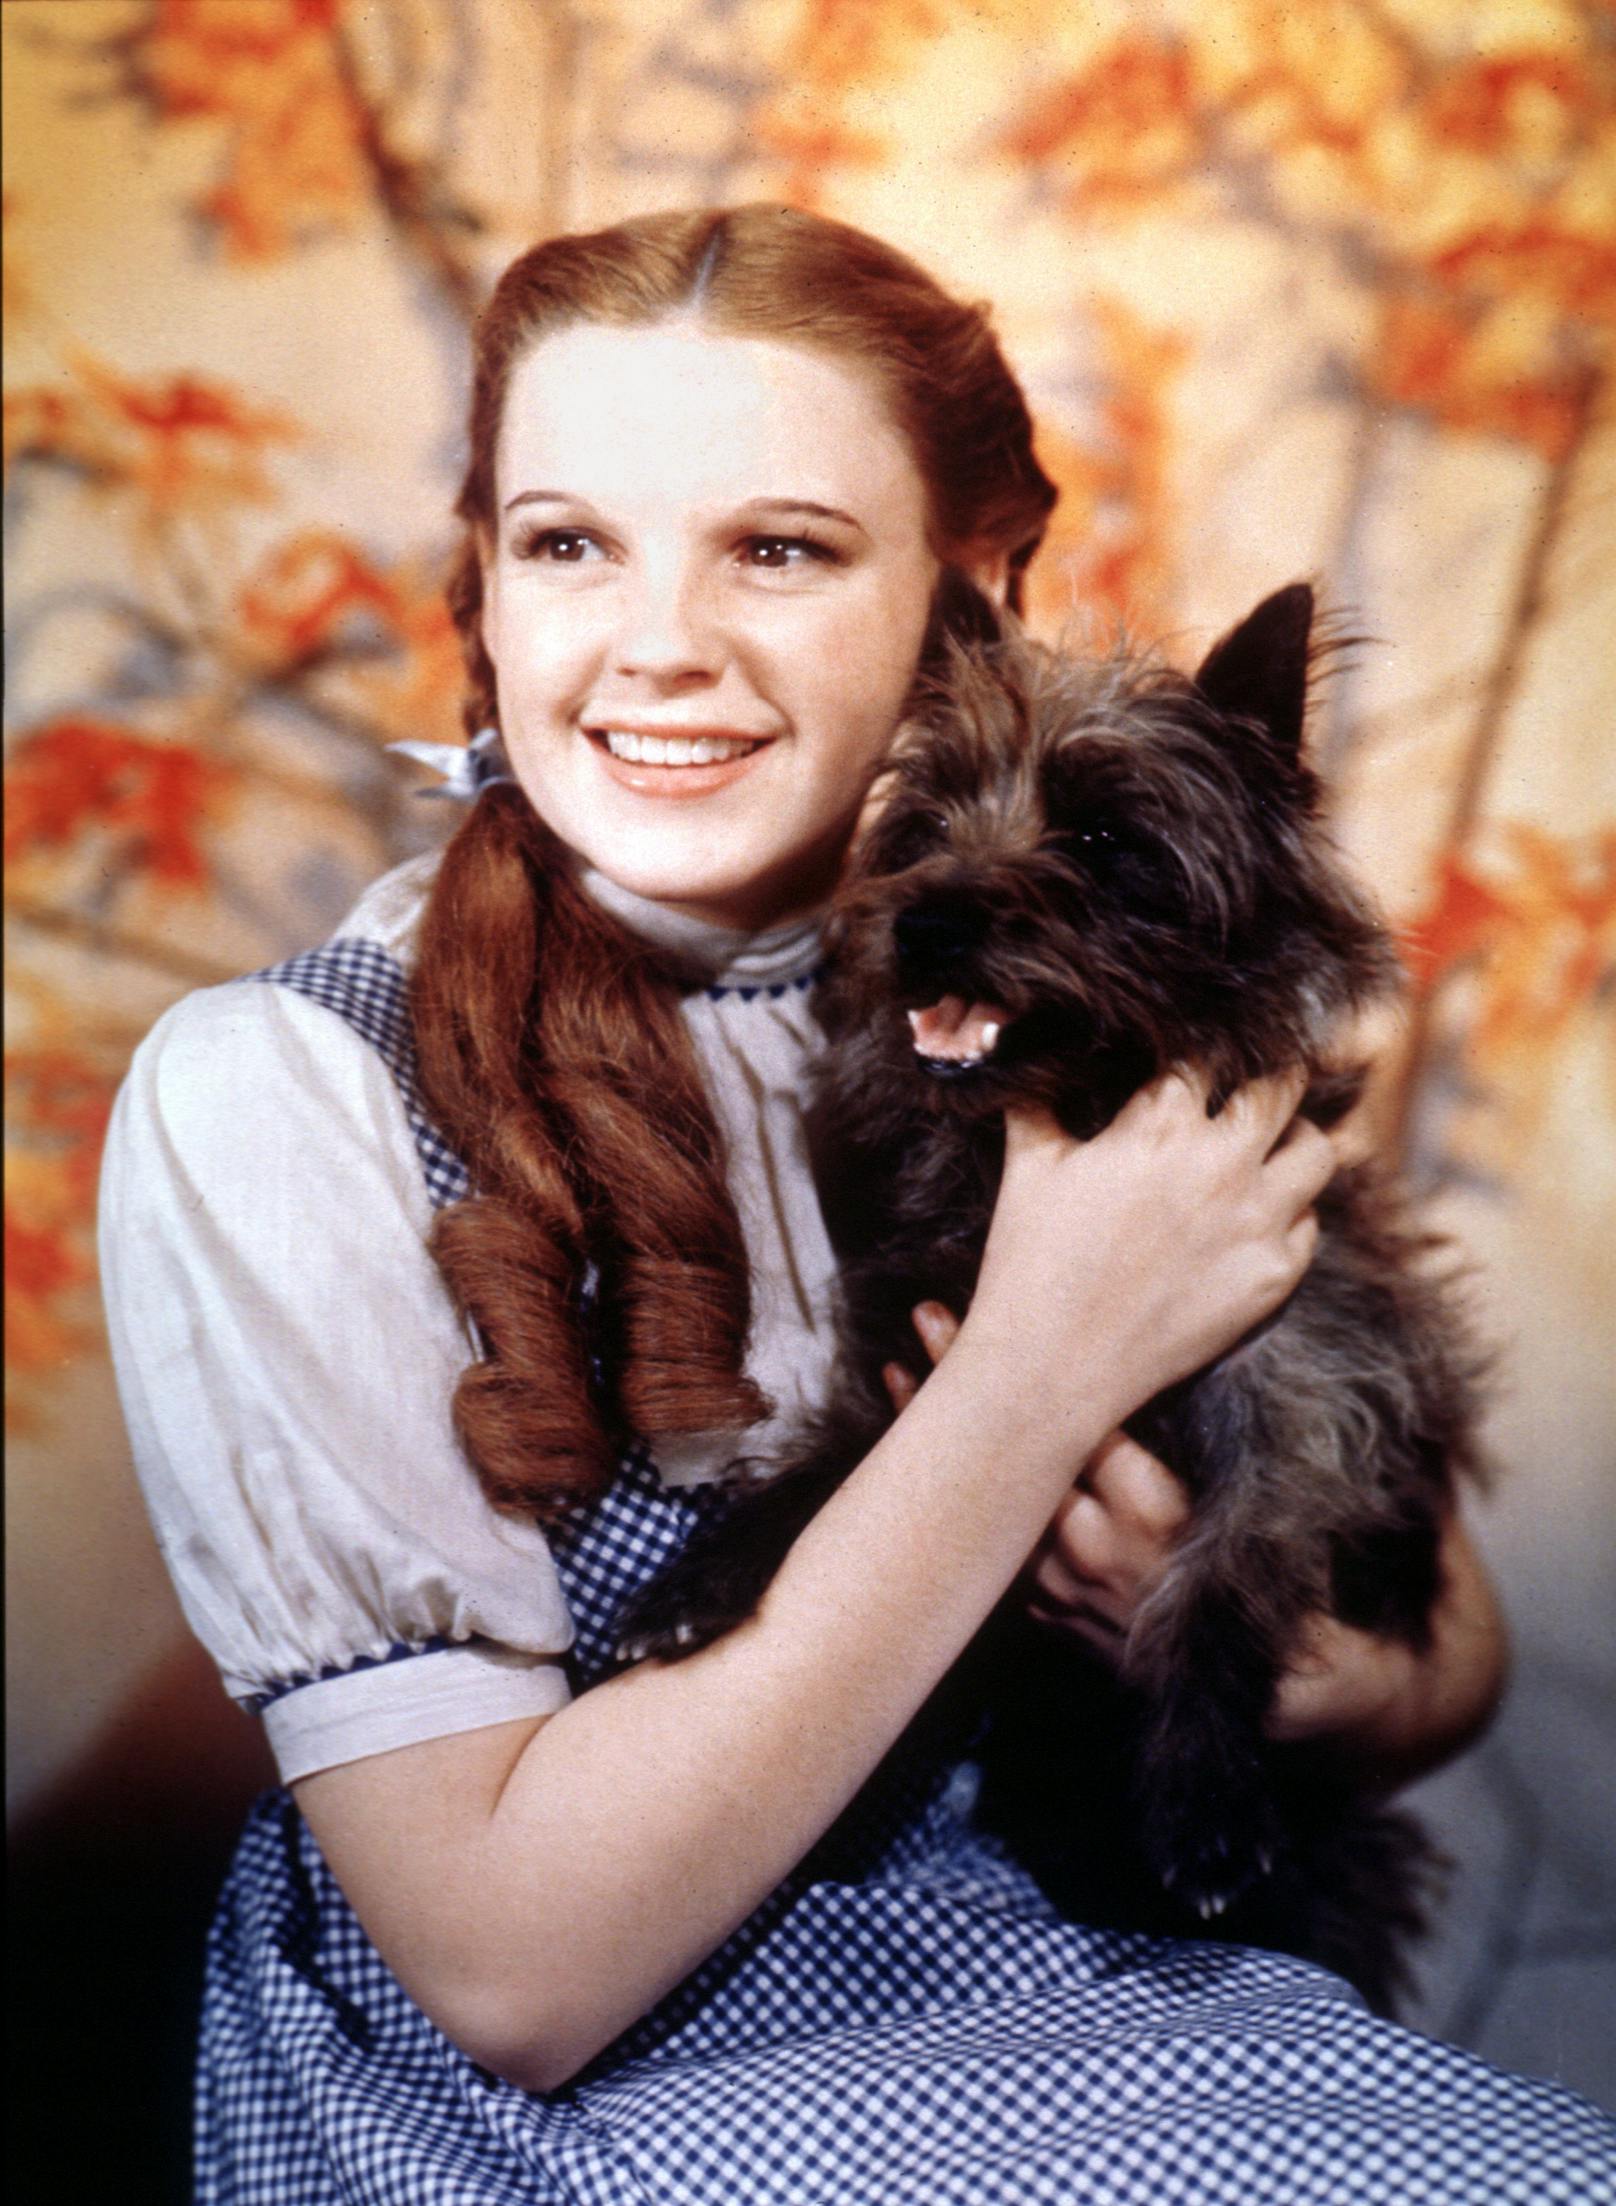 Der süße <strong>"TOTO"</strong>, bekannt aus dem Filmklassiker "Der Zauberer von Oz" begleitet sein Frauchen Dorothy durch das zauberhafte Land und meistert mit ihr alle Gefahren. Gewusst? Toto war im echten Leben eine Hündin! <br>